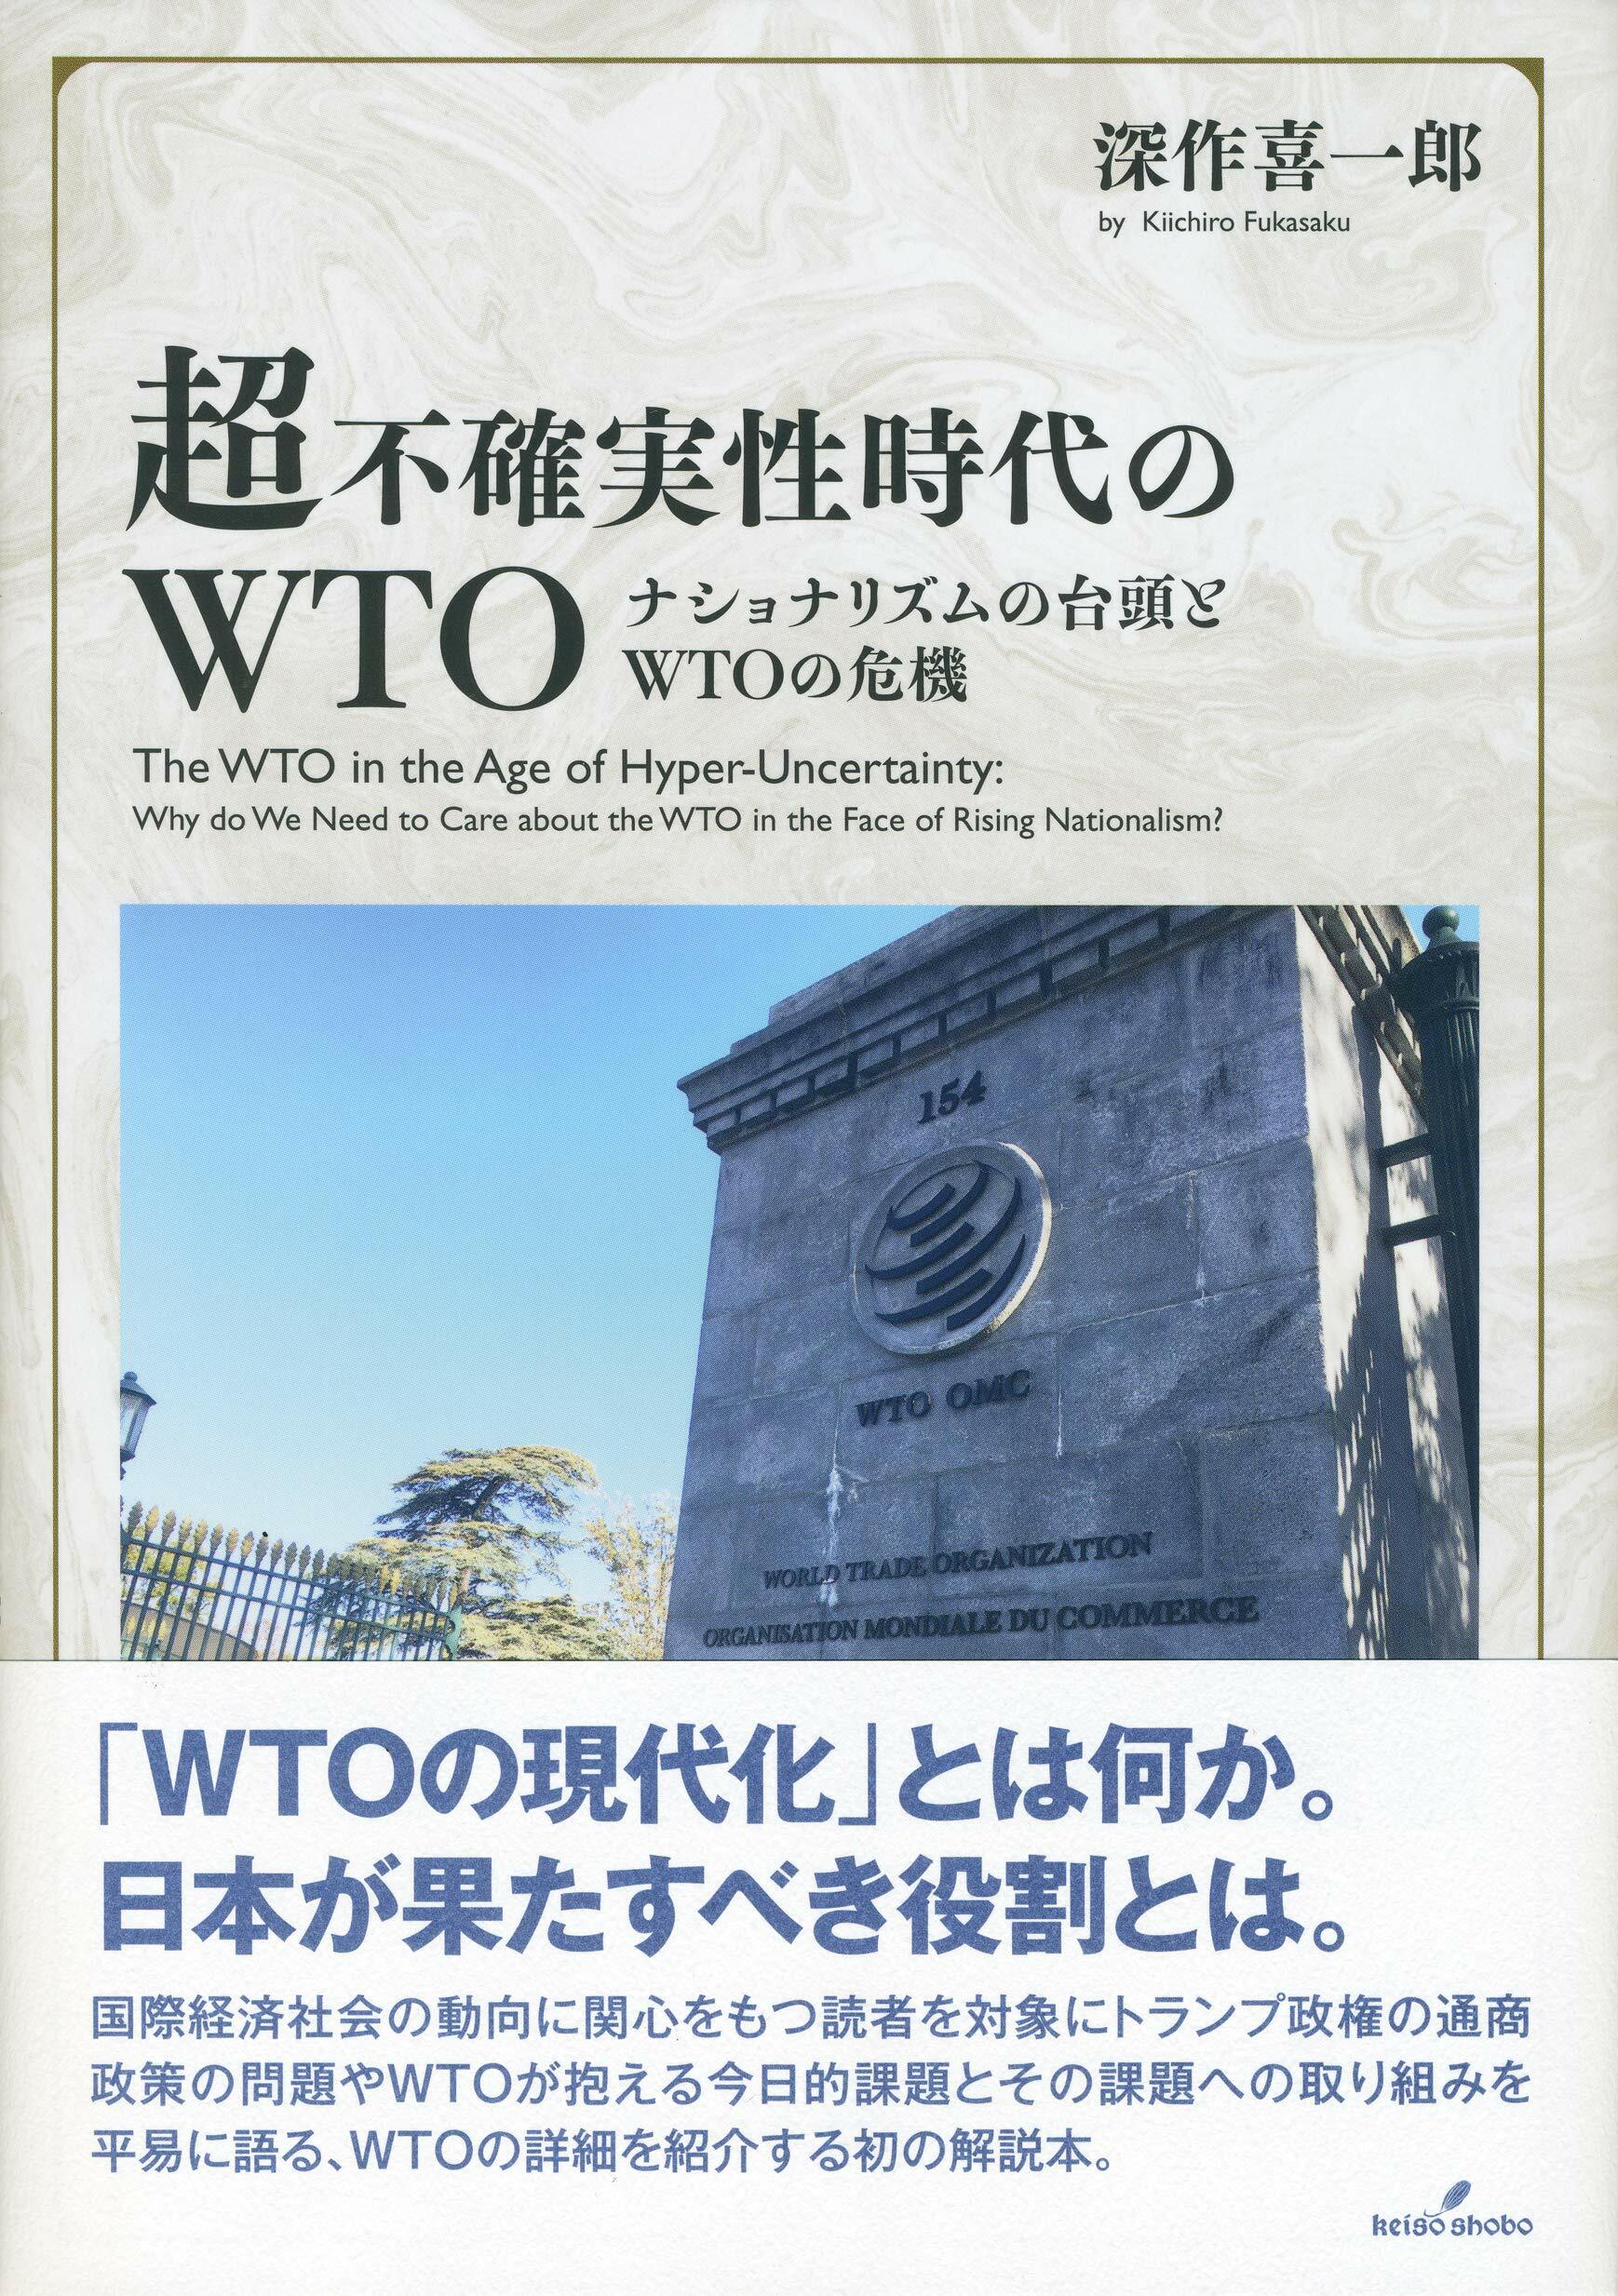 超不確實性時代のWTO